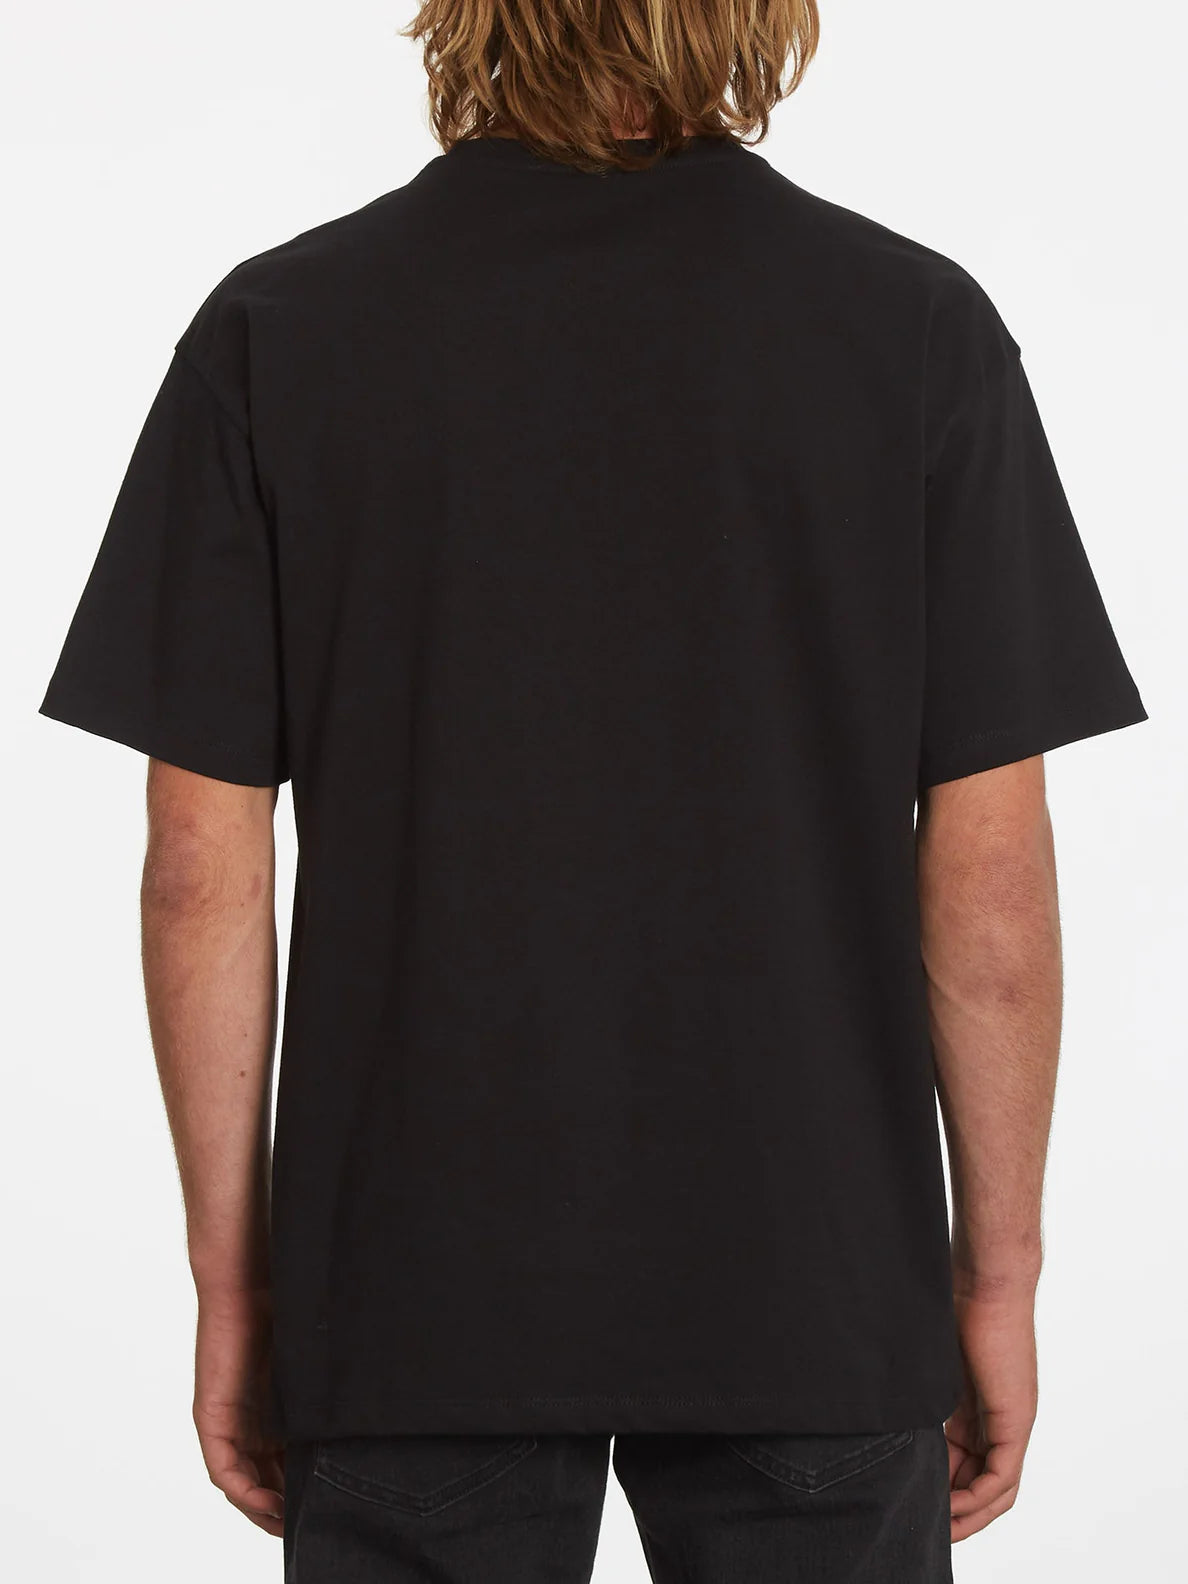 Volcom Dirtyends Schwarzes T-Shirt | Meistverkaufte Produkte | Neue Produkte | Neueste Produkte | surfdevils.com